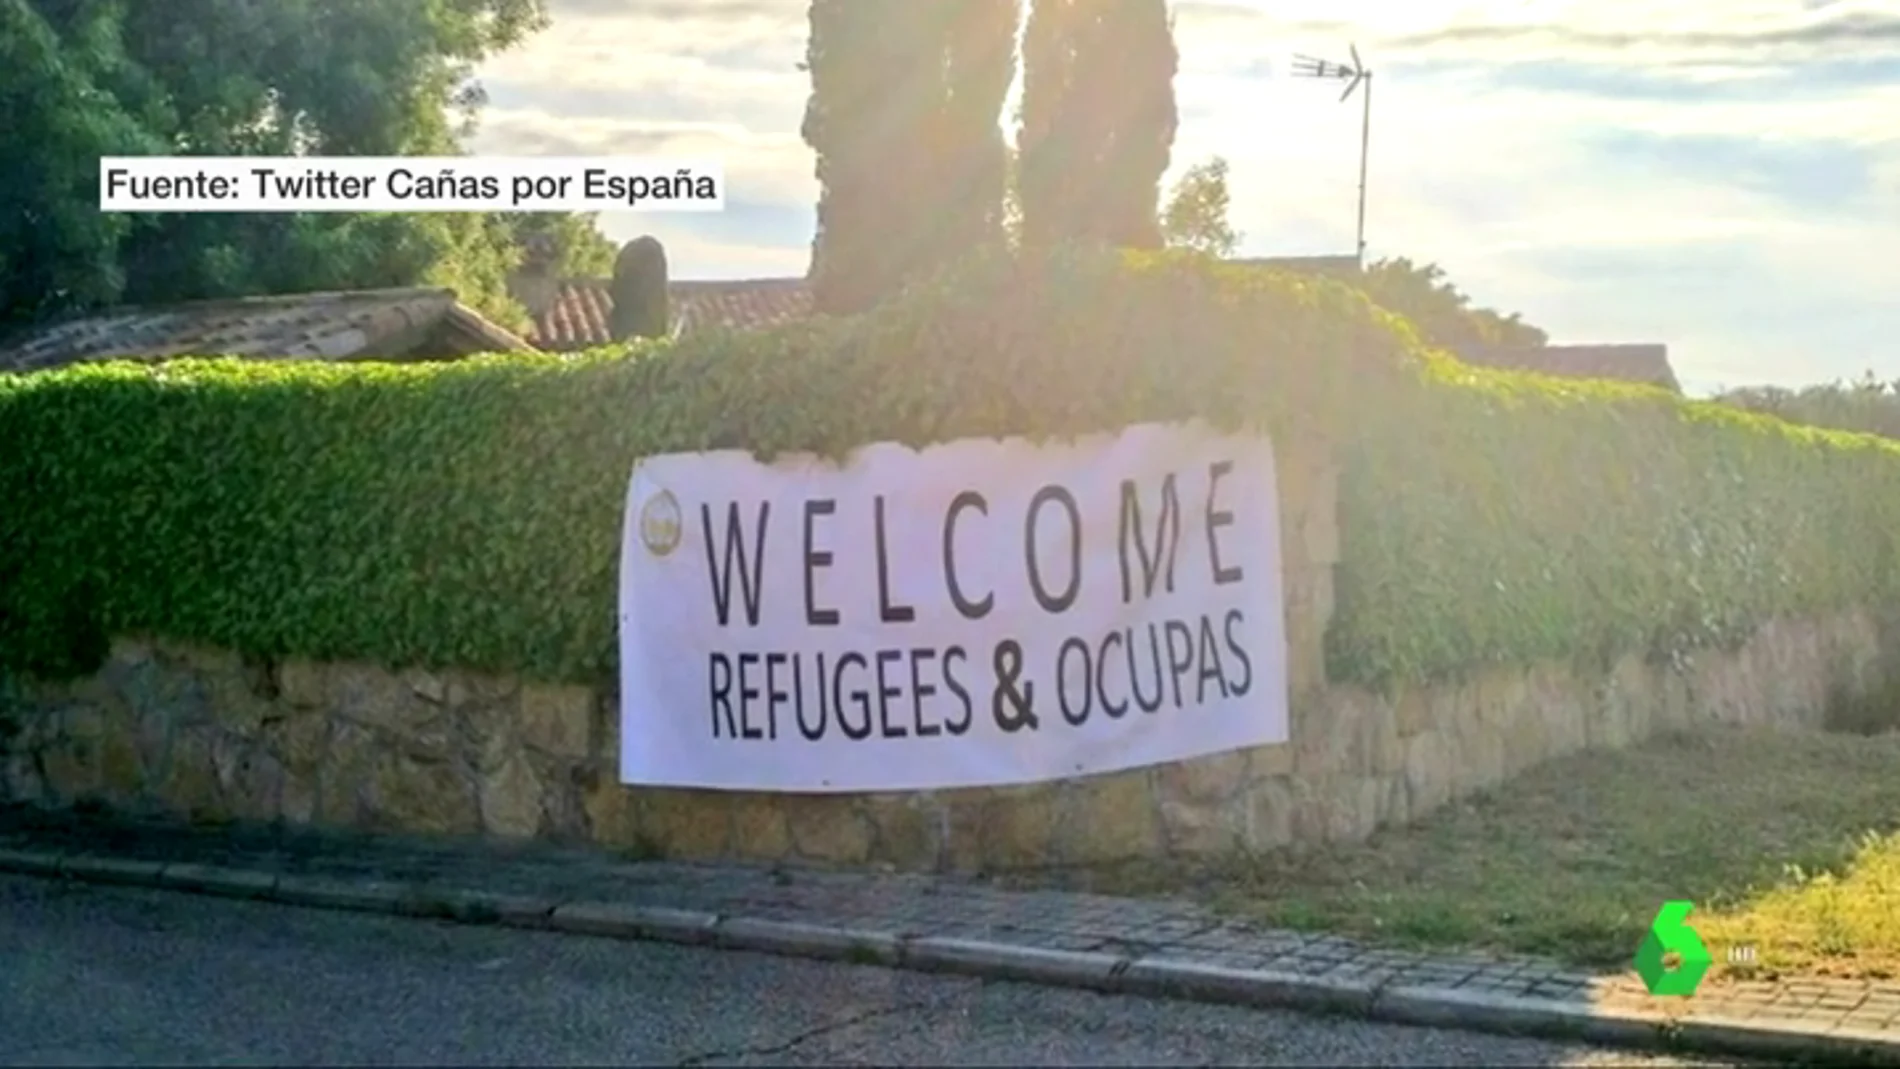 Las juventudes de VOX cuelgan una pancarta en la nueva casa de Pablo Iglesias e Irene Montero: "Bienvenidos refugiados y ocupas"